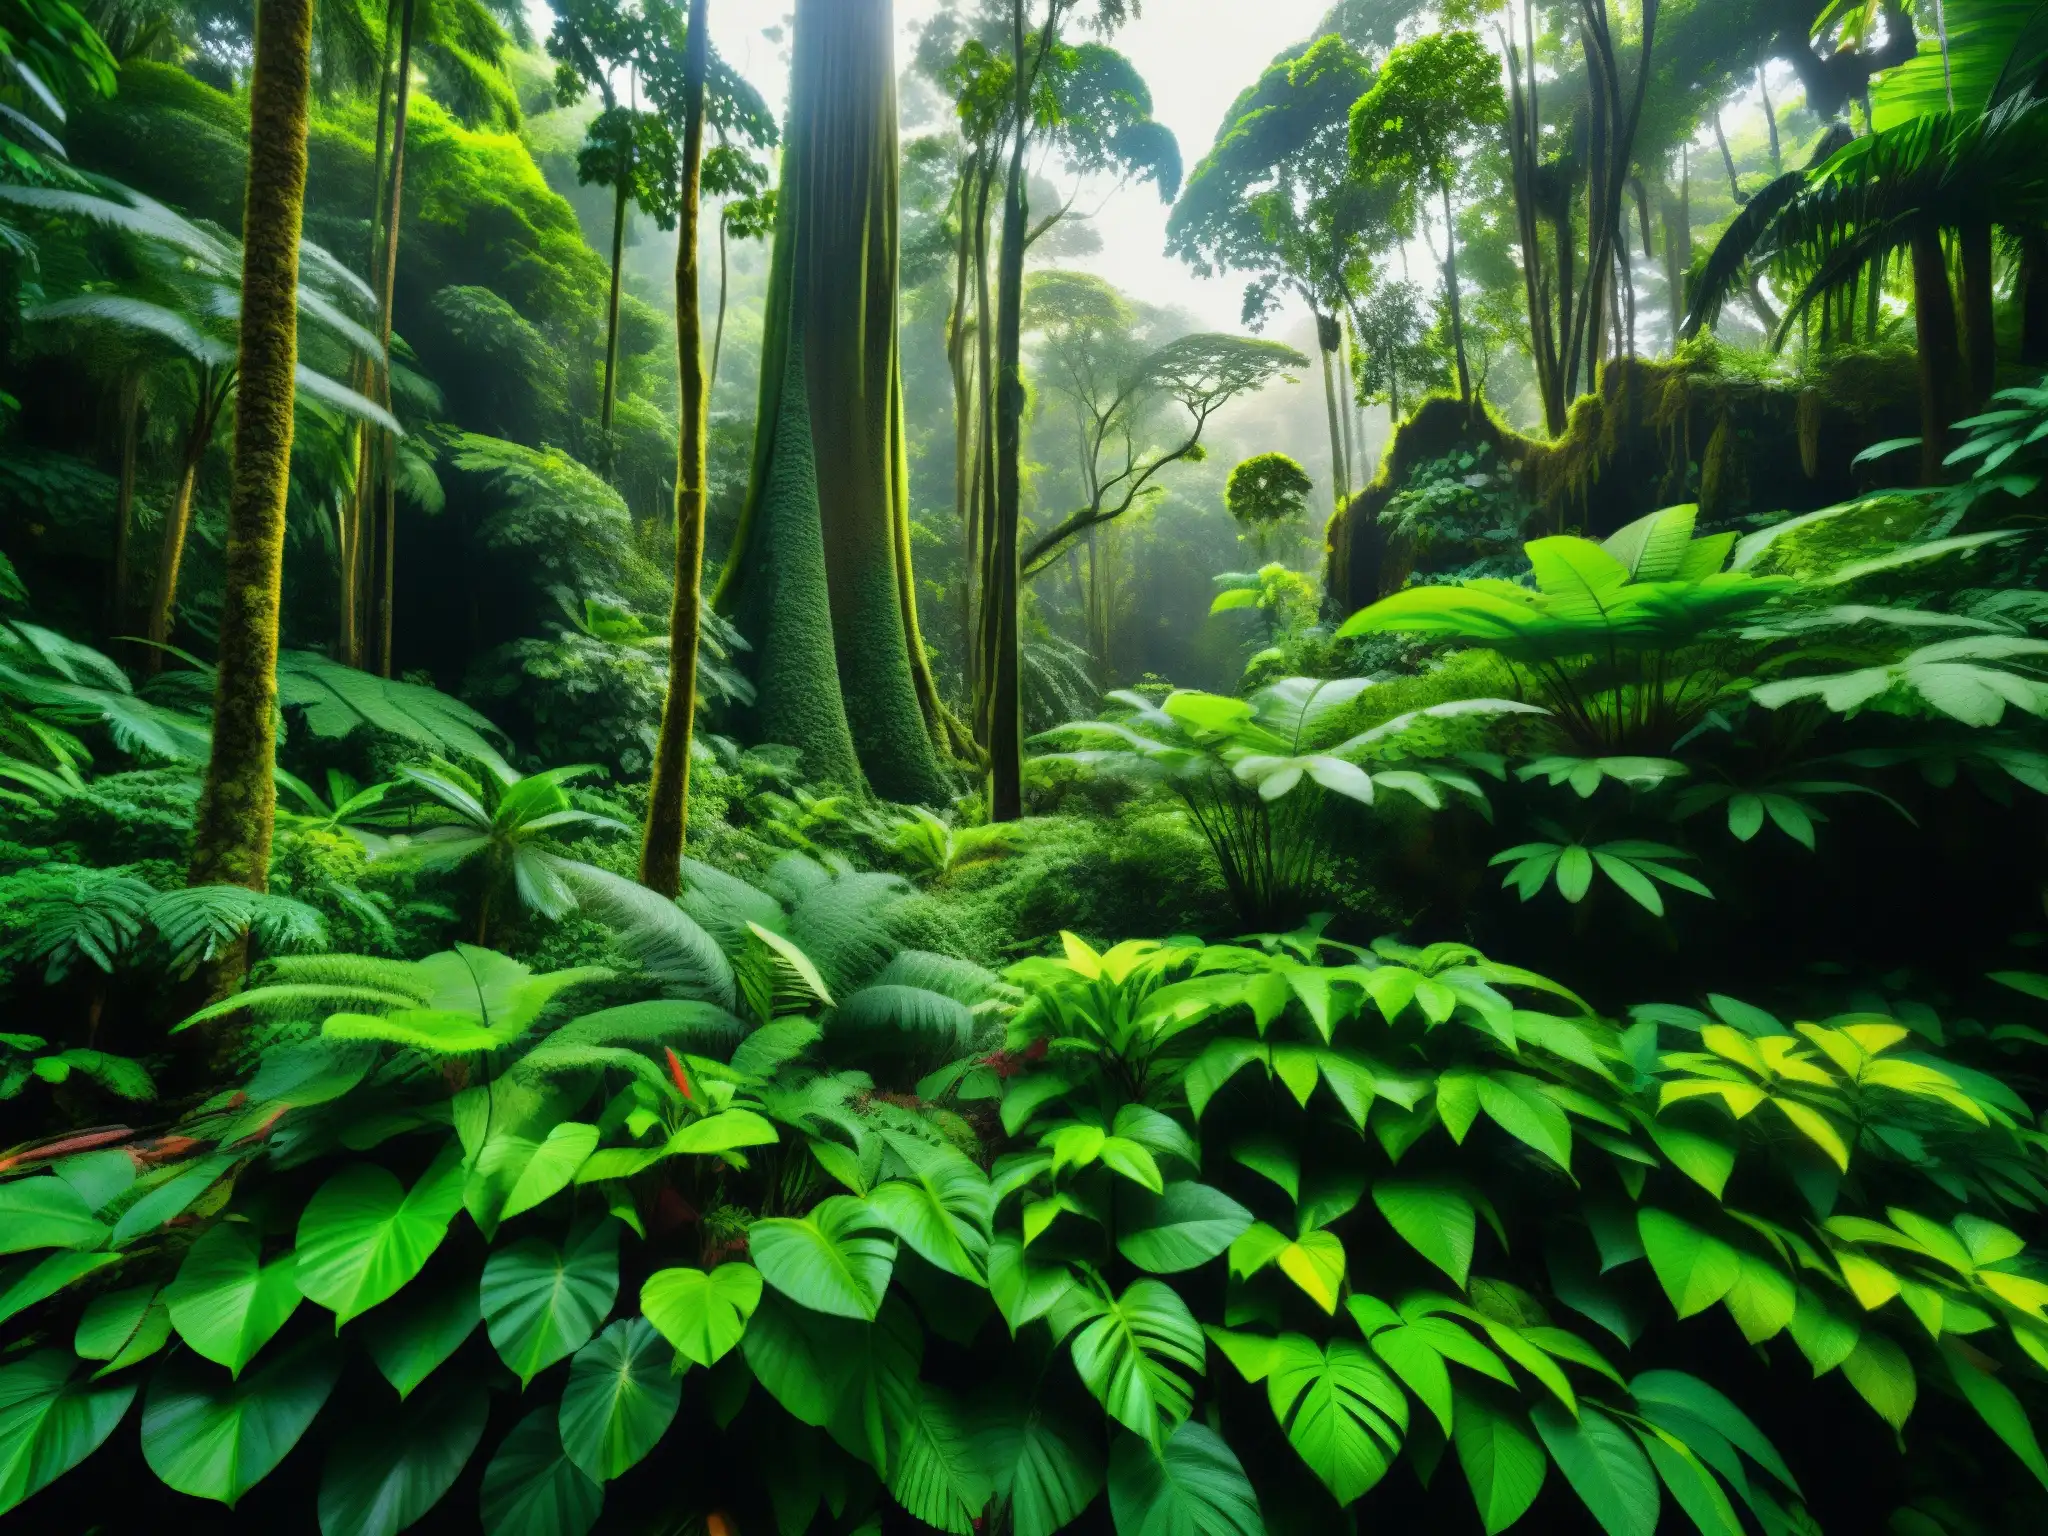 Una exuberante selva tropical en la costa del Pacífico, evocando la leyenda de la Tunda en la costa pacífica con su belleza primordial